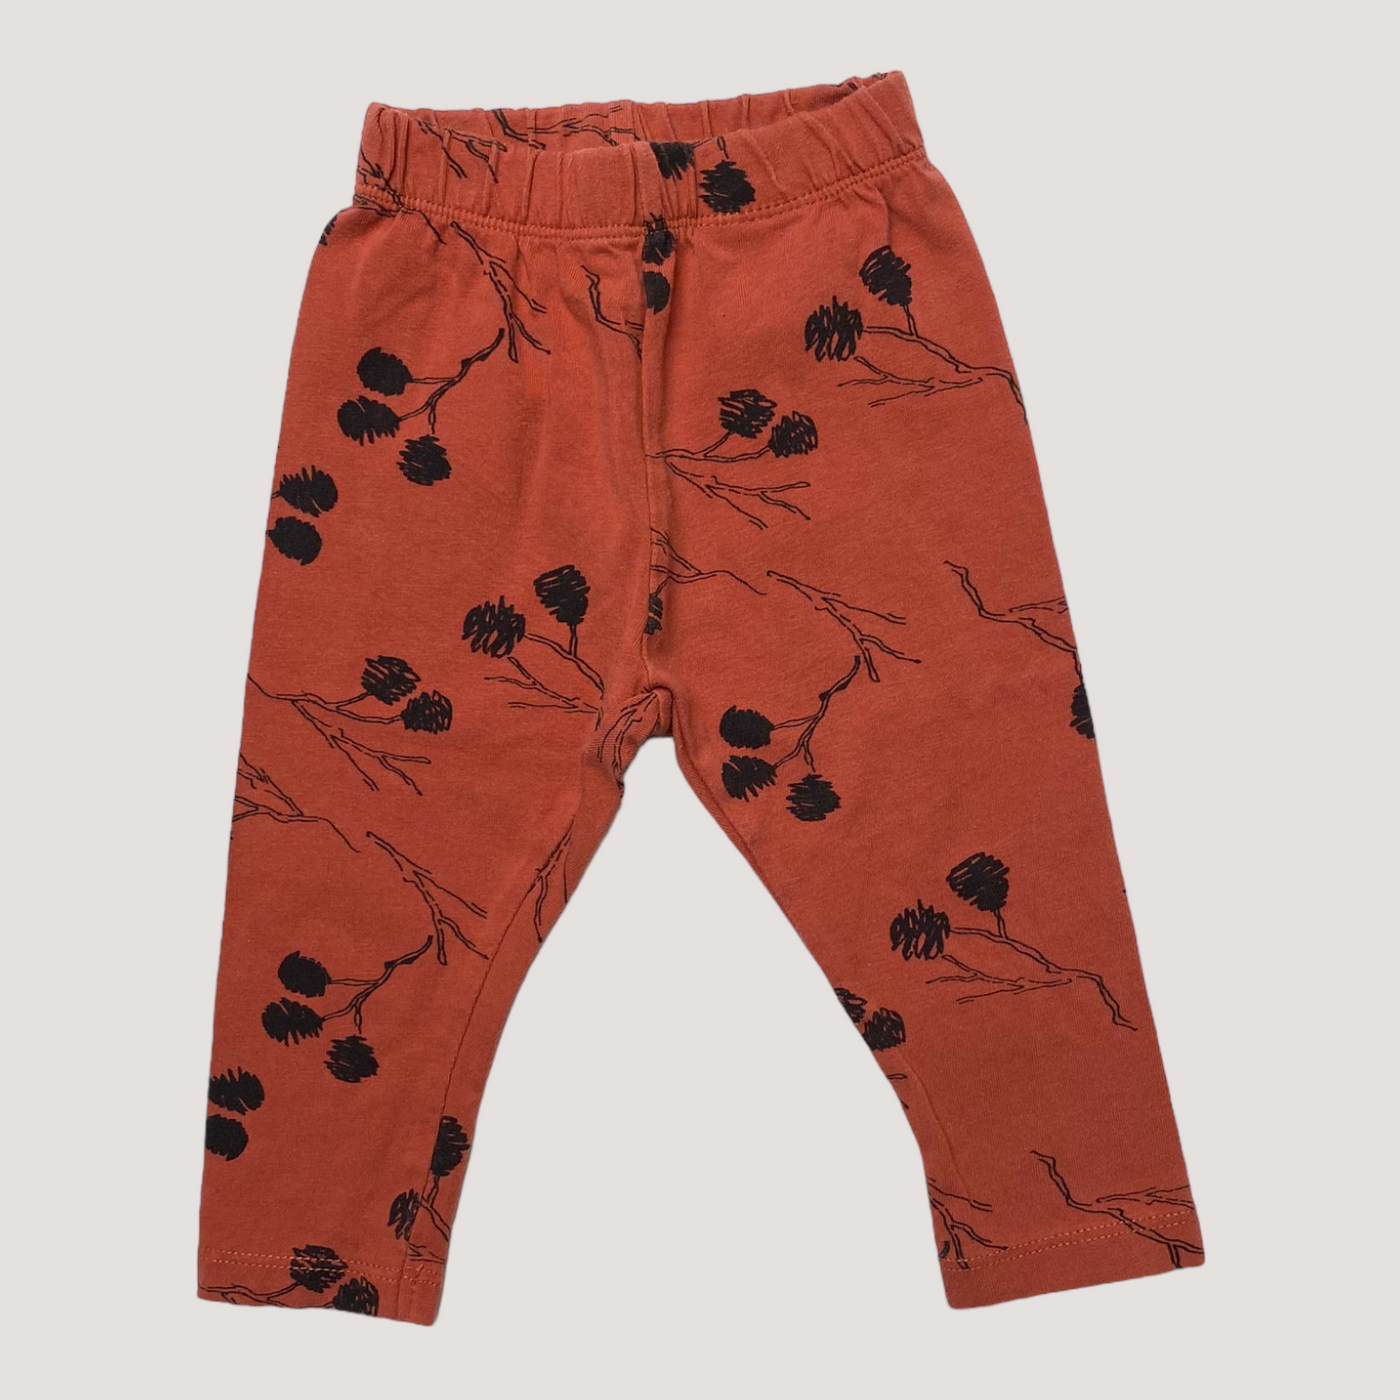 Mainio leggings, chili red | 62/68cm